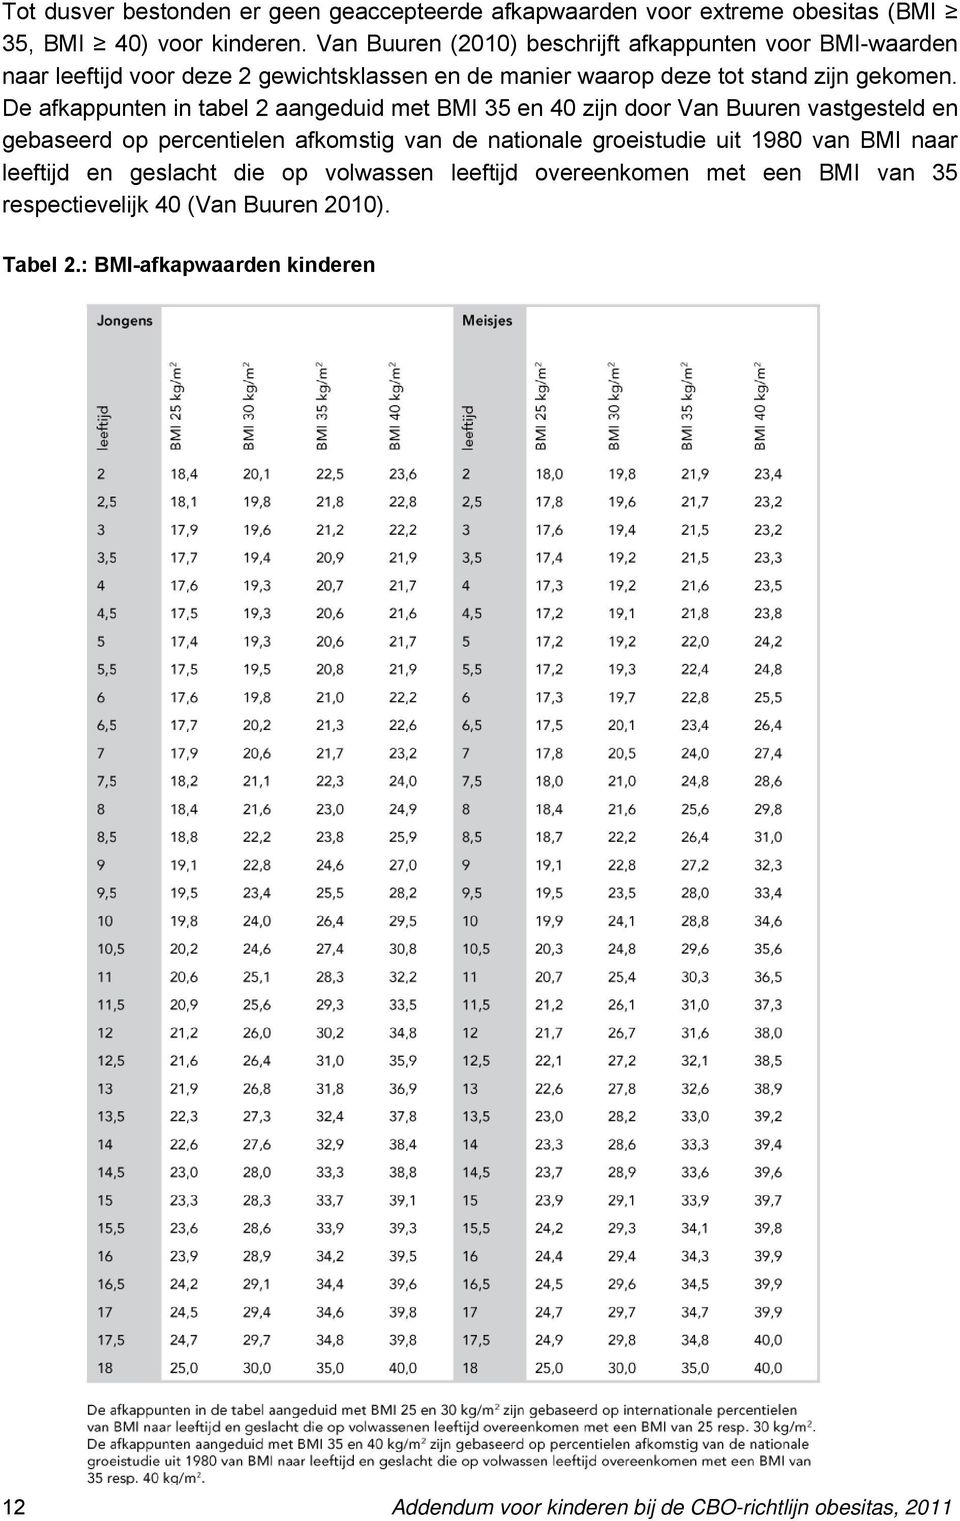 De afkappunten in tabel 2 aangeduid met BMI 35 en 40 zijn door Van Buuren vastgesteld en gebaseerd op percentielen afkomstig van de nationale groeistudie uit 1980